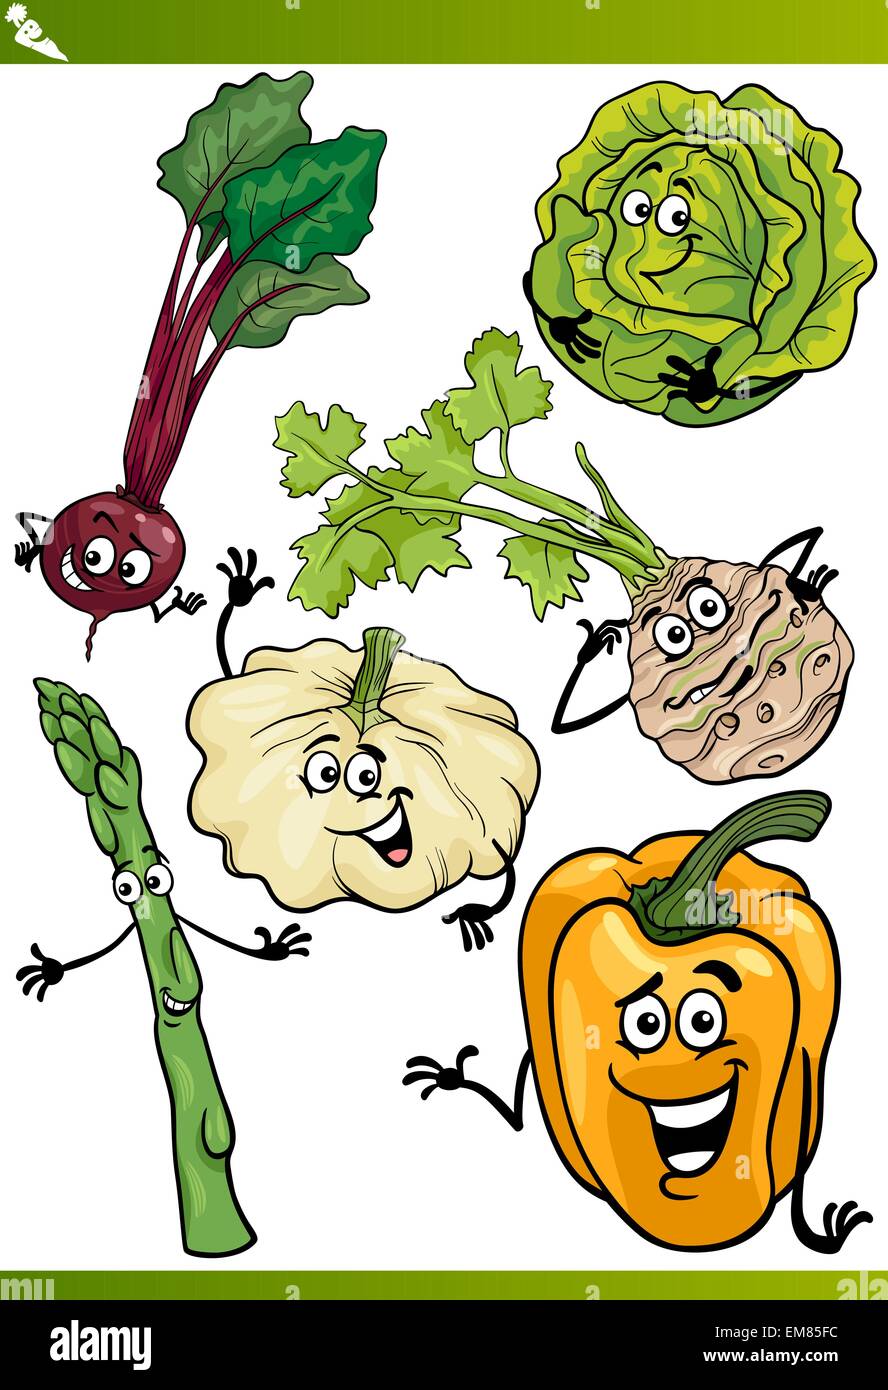 Gemüse cartoon Illustration Satz Stock Vektor